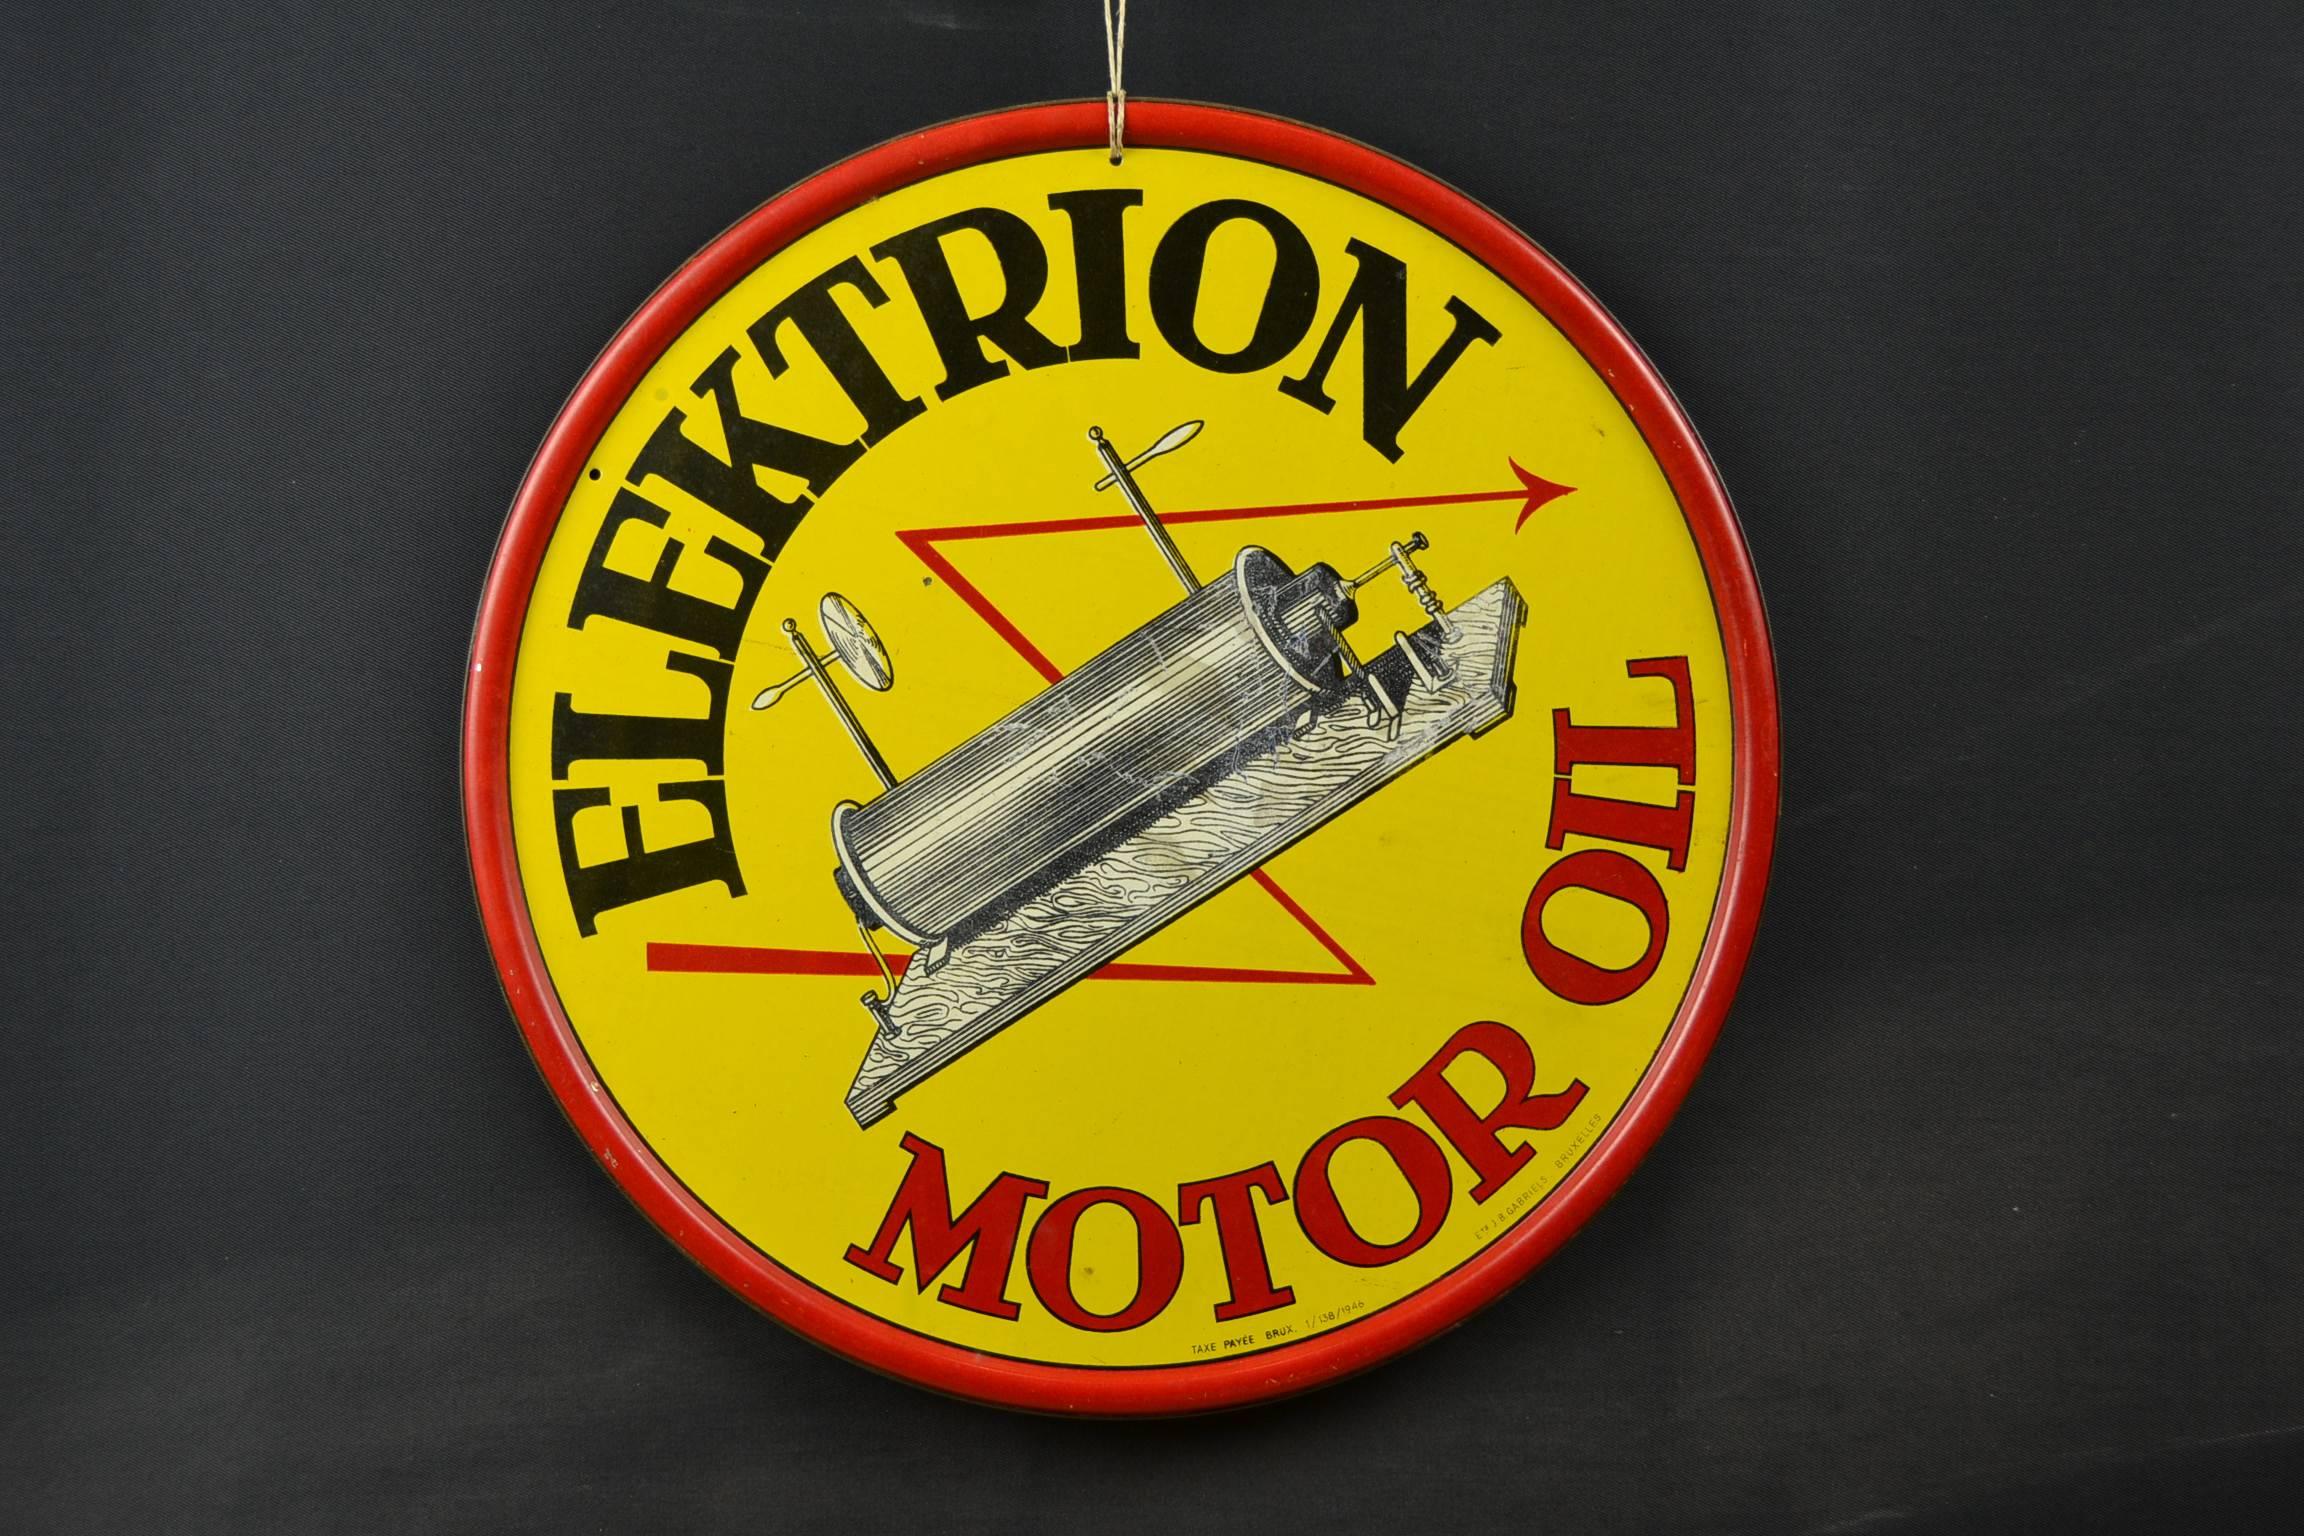 1946 Tin Advertising Sign for Elektrion Motor Oil  1